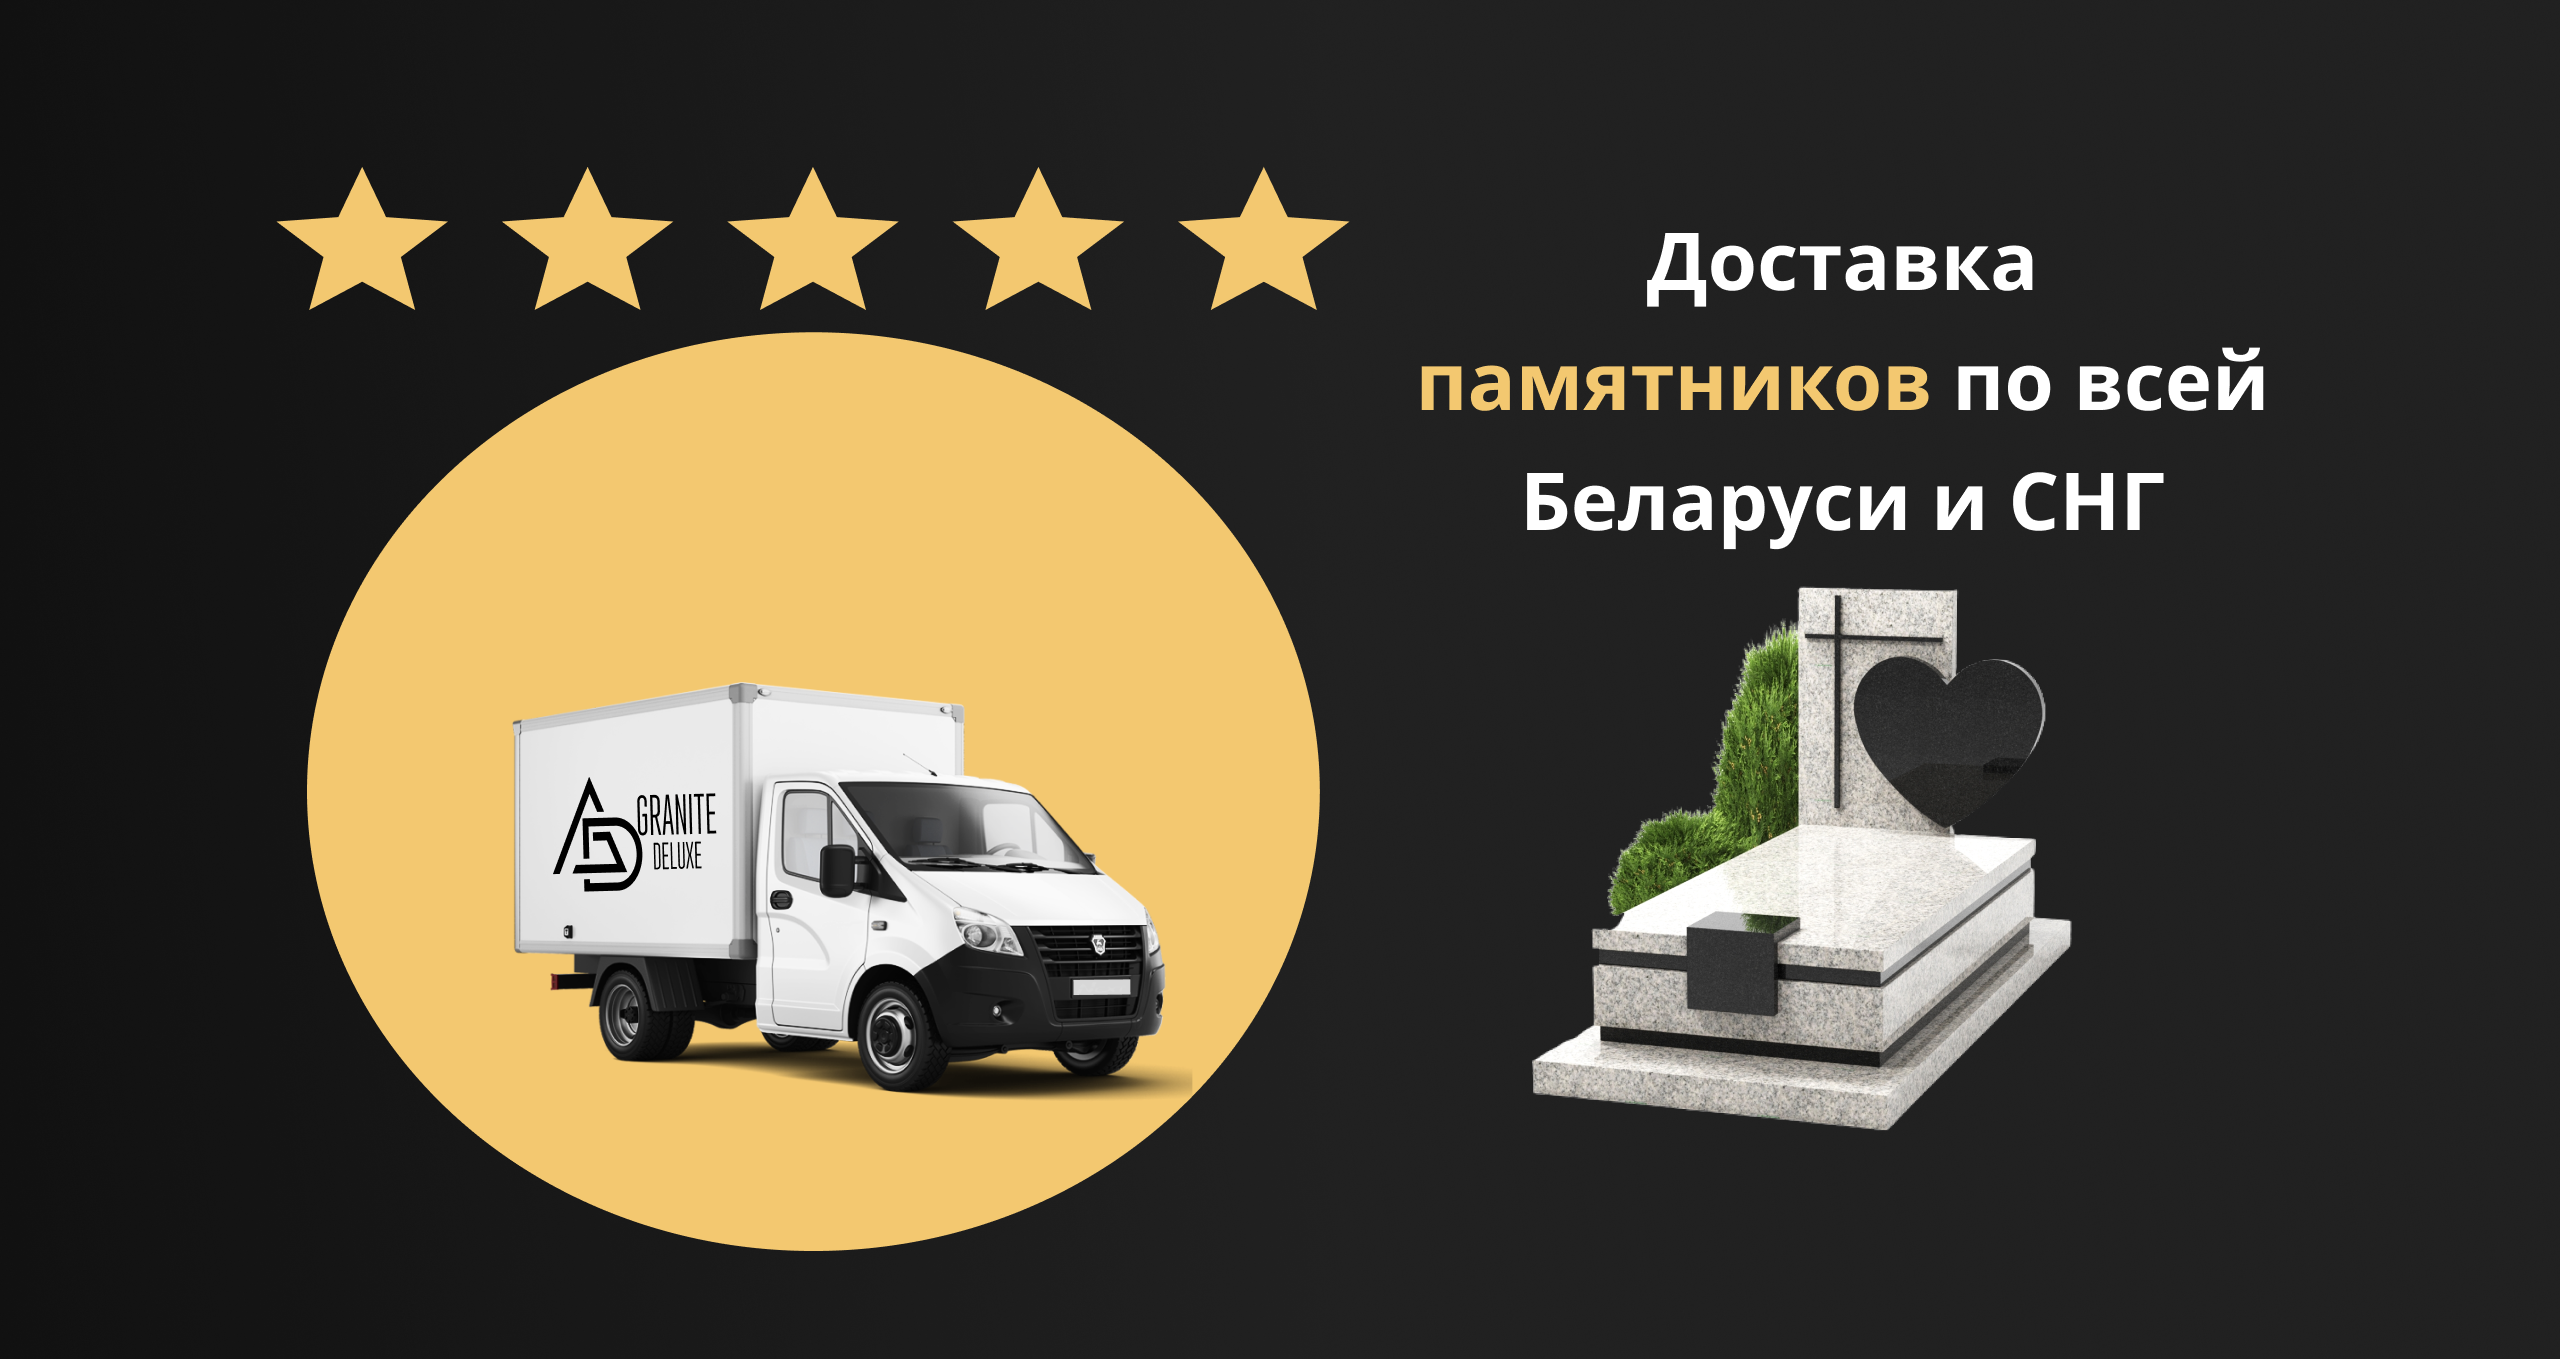 Заказать памятники на могилу в Минске - цена на памятники